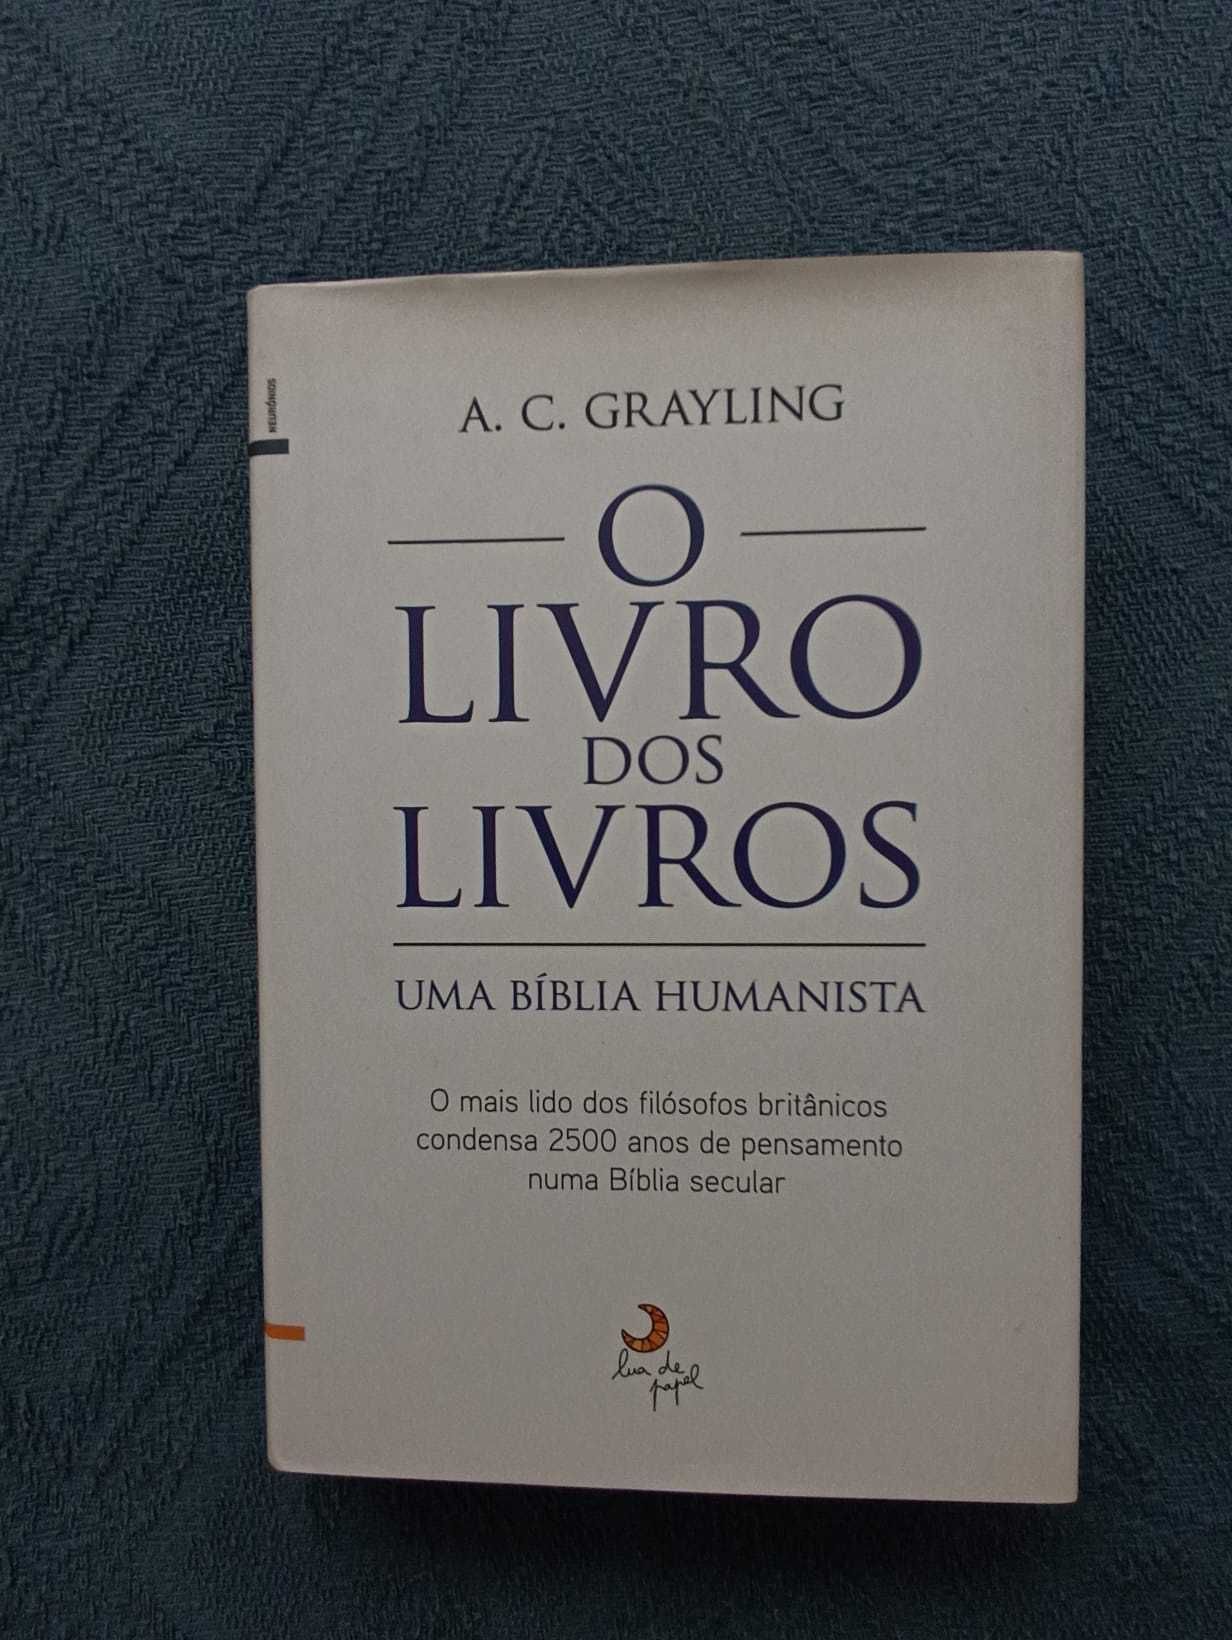 [LIVRO] O Livro dos Livros, A. C. Grayling